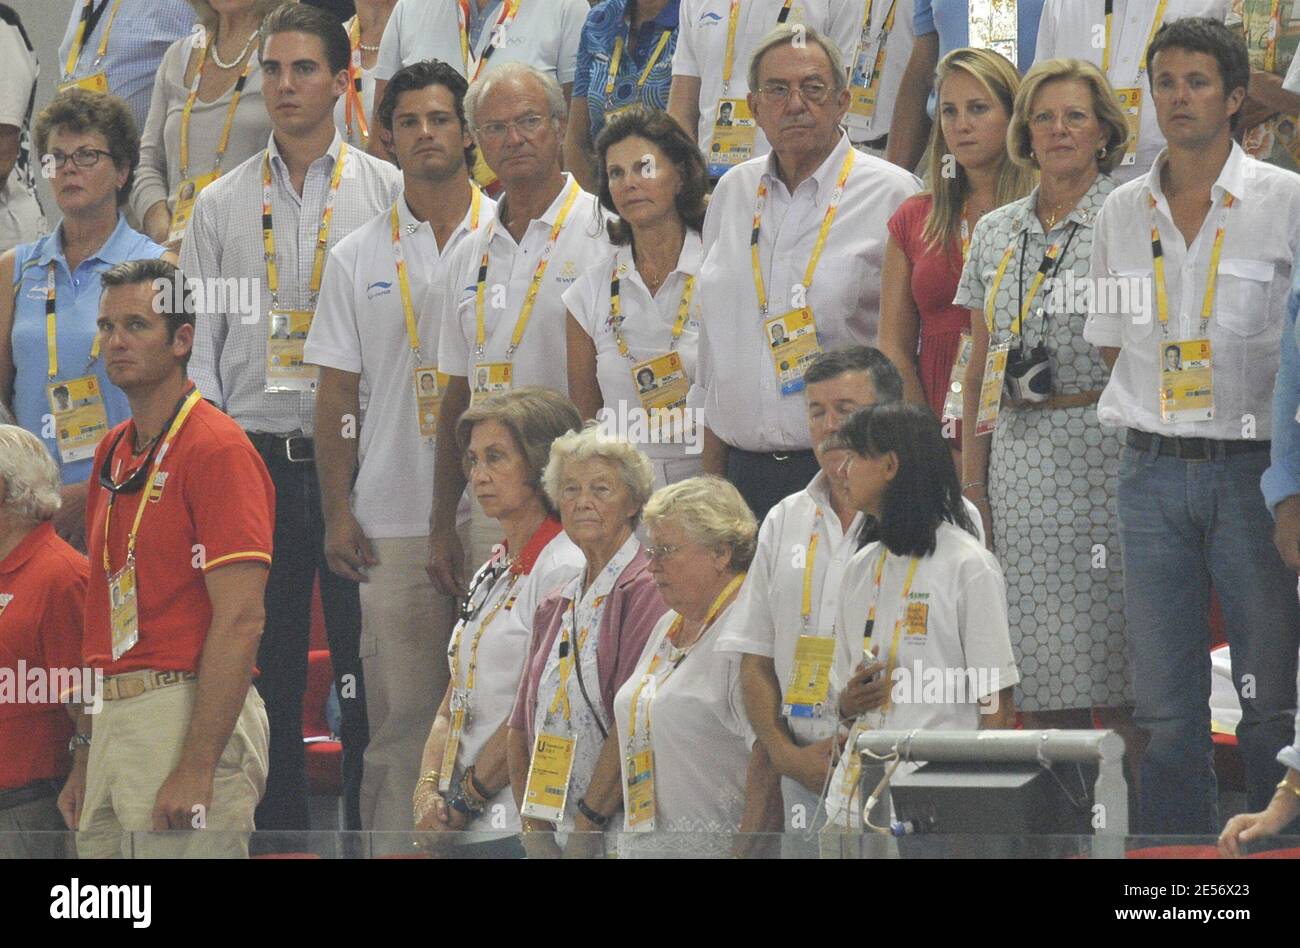 (L-R) il principe Filippo di Grecia, il principe Carlo Filippo di Svezia, il re Carl XVI Gustaf e la moglie Regina Silvia, ex regina Anna-Maria di Grecia con suo marito ex-re Costantino di Grecia, il principe ereditario danese Frederik, la regina Sofia di Spagna, l'Inaki Urdangarin di Spagna, La principessa Cristina di Spagna e la regina Sofia si sono svolte il 2008° giorno dei Giochi Olimpici di Pechino 11 allo Stadio Nazionale 'Bird's Nest' di Beinjing, in Cina, il 19 agosto 2008. Foto di Gouhier-Hahn-Nebinger/Cameleon/ABACAPRESS.COM Foto Stock